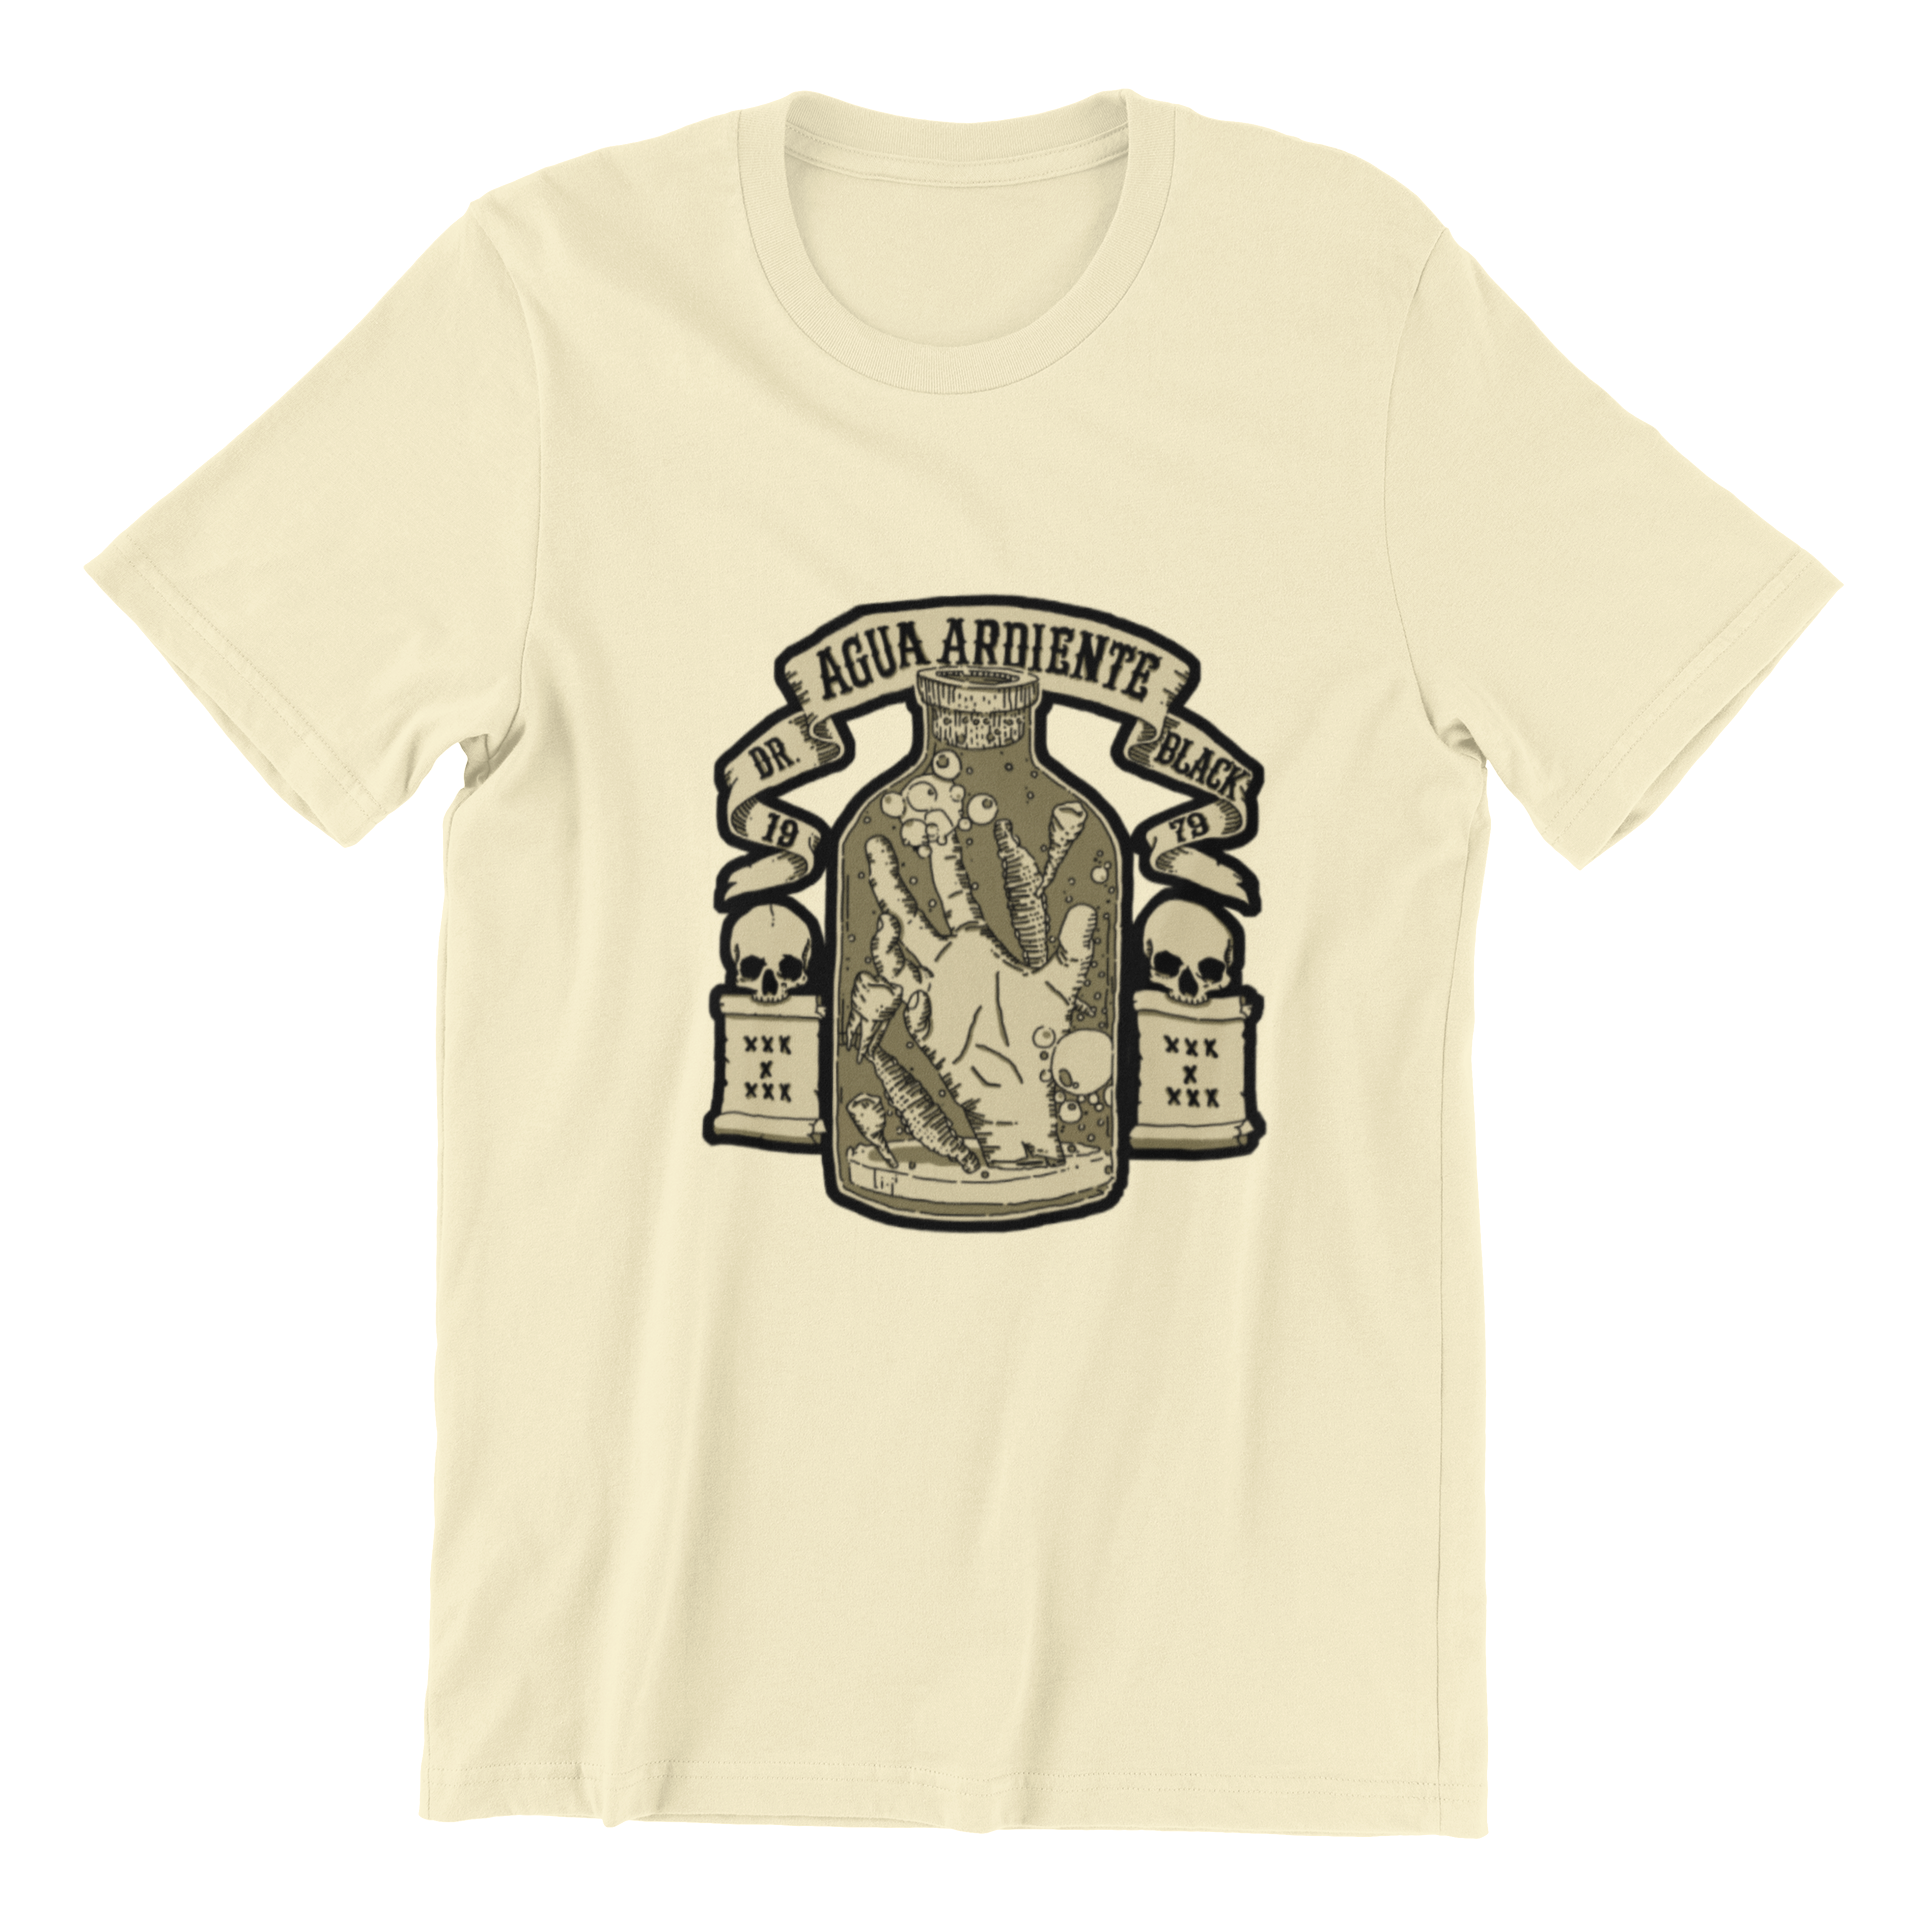 Dr. Aguardiente Black 1979 T-Shirt - S / Soft Cream -